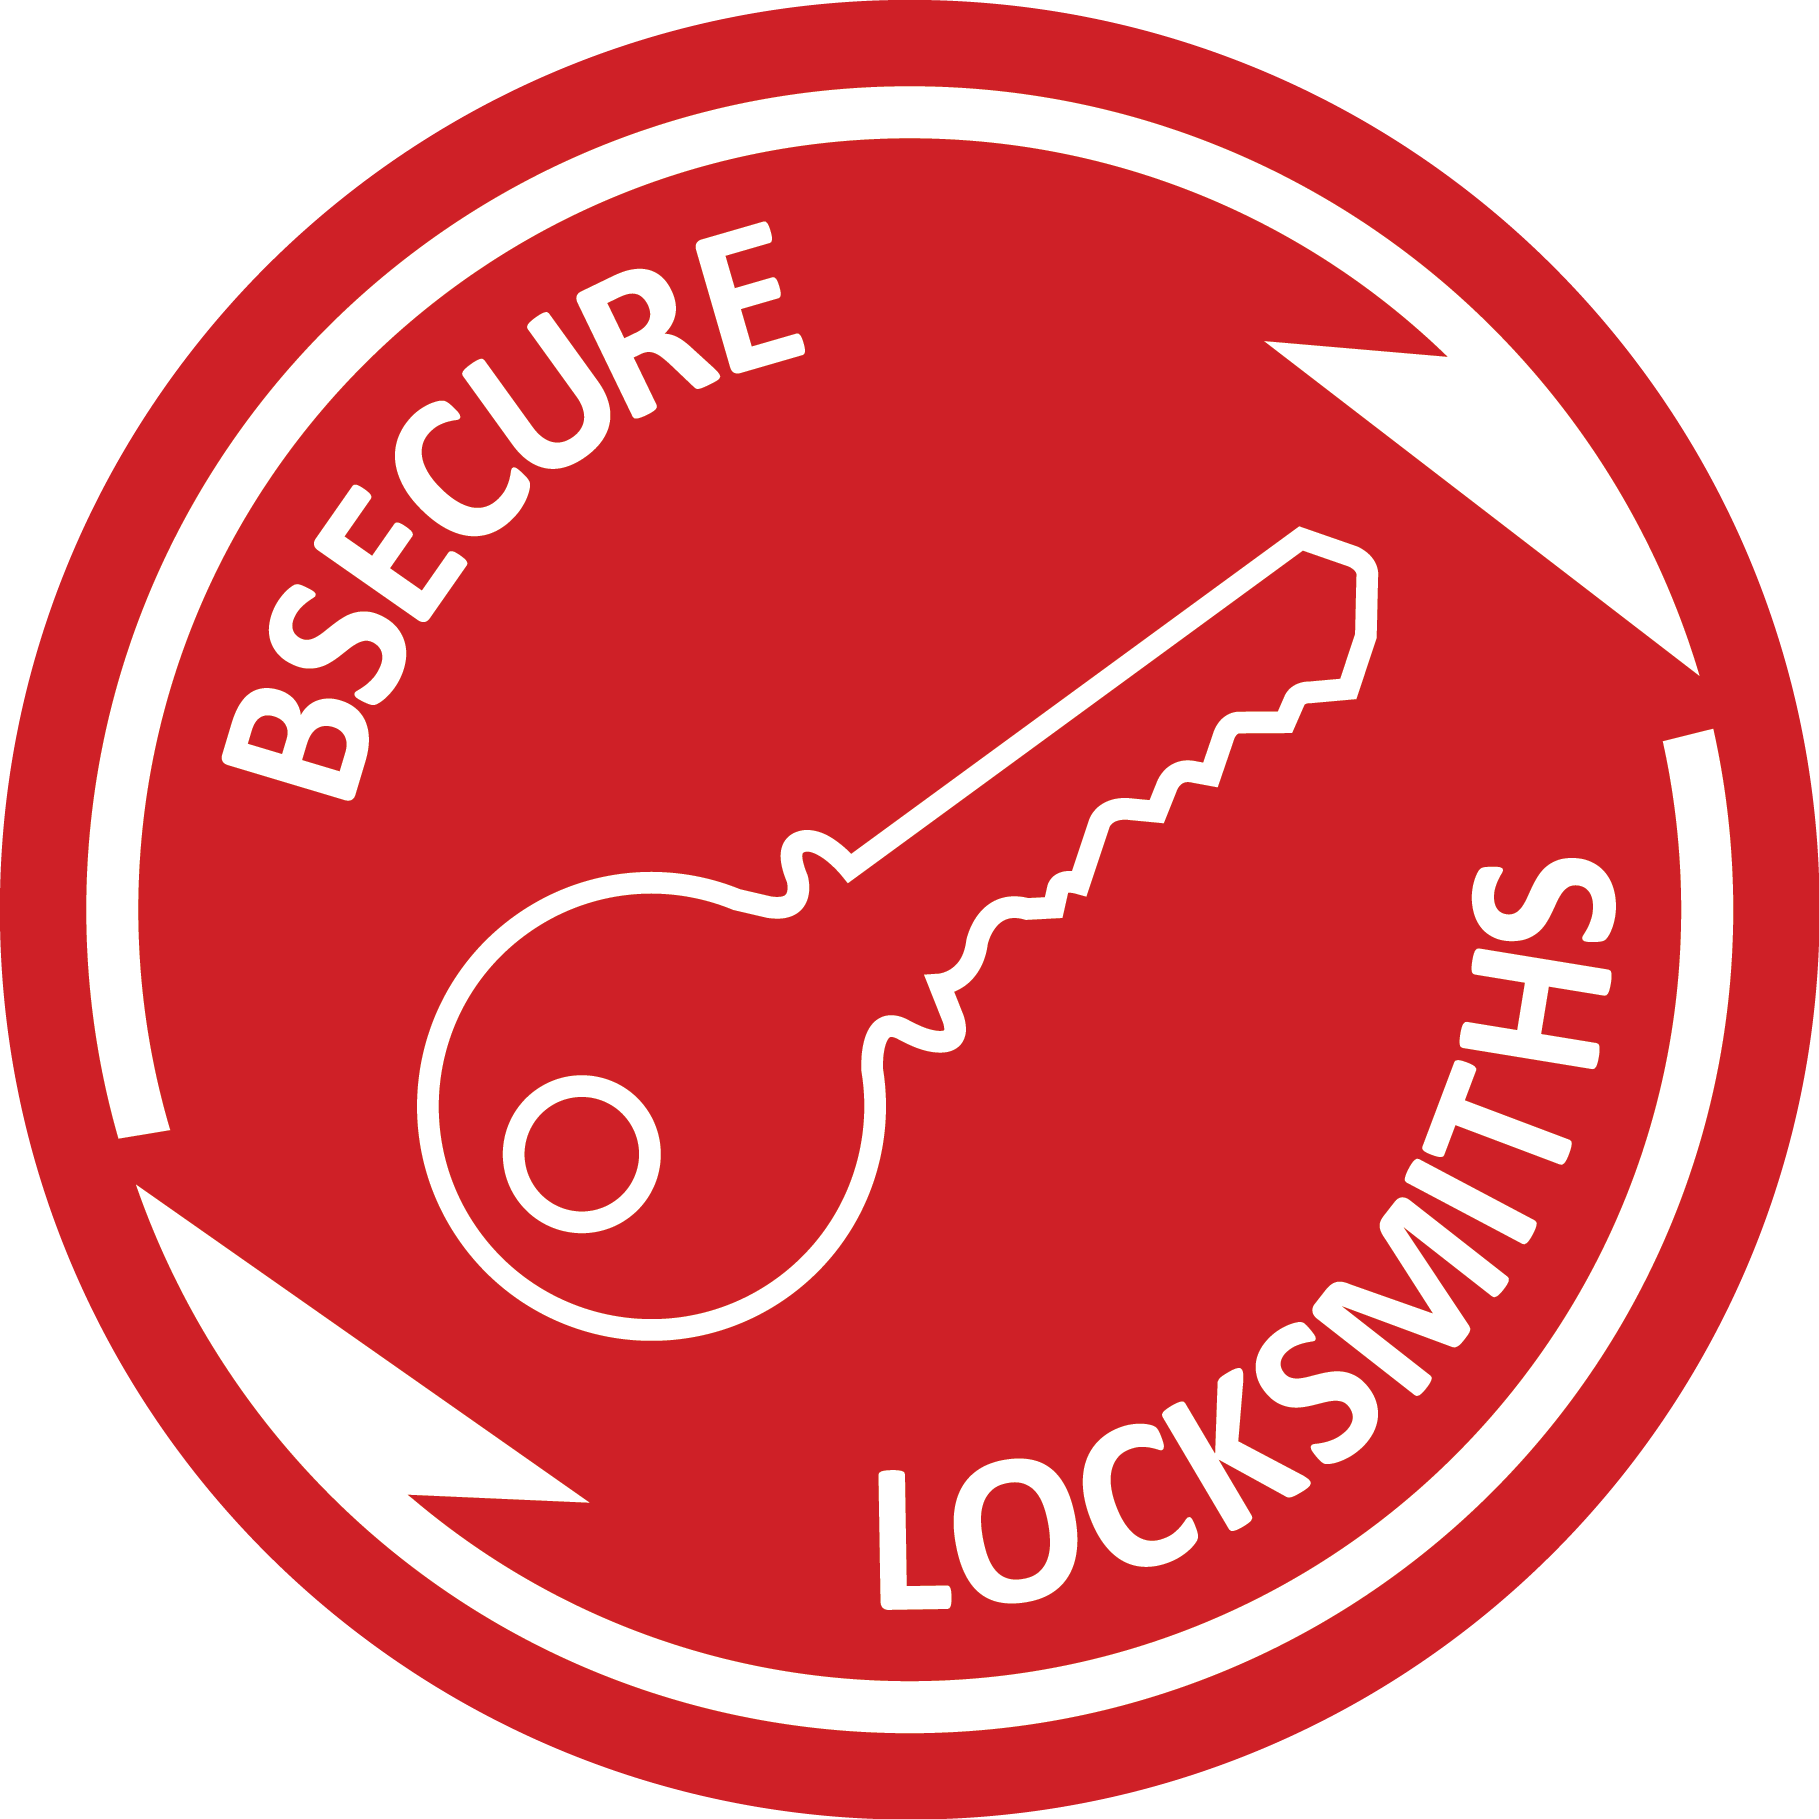 Bsecure Locksmiths